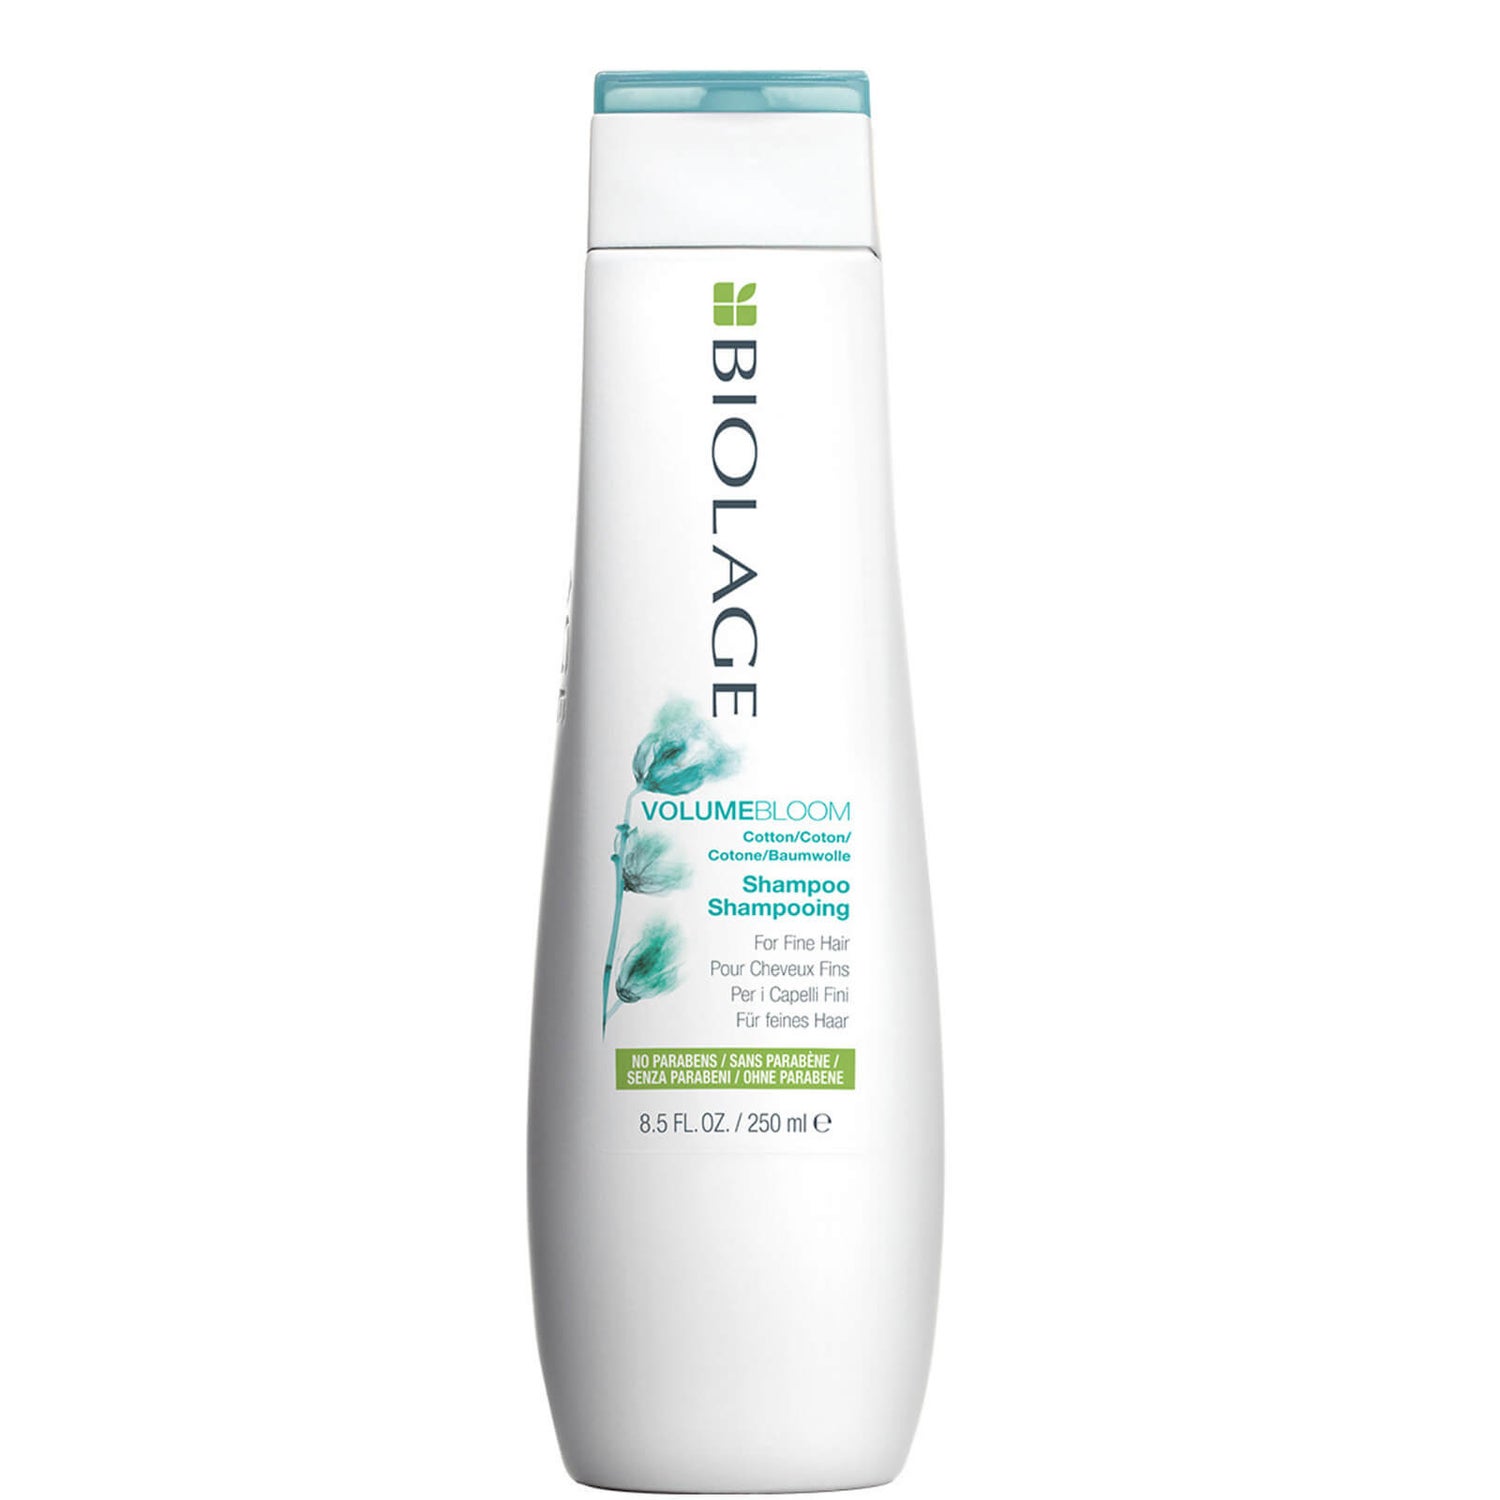 Matrix Biolage VolumeBloom szampon do włosów (250 ml)